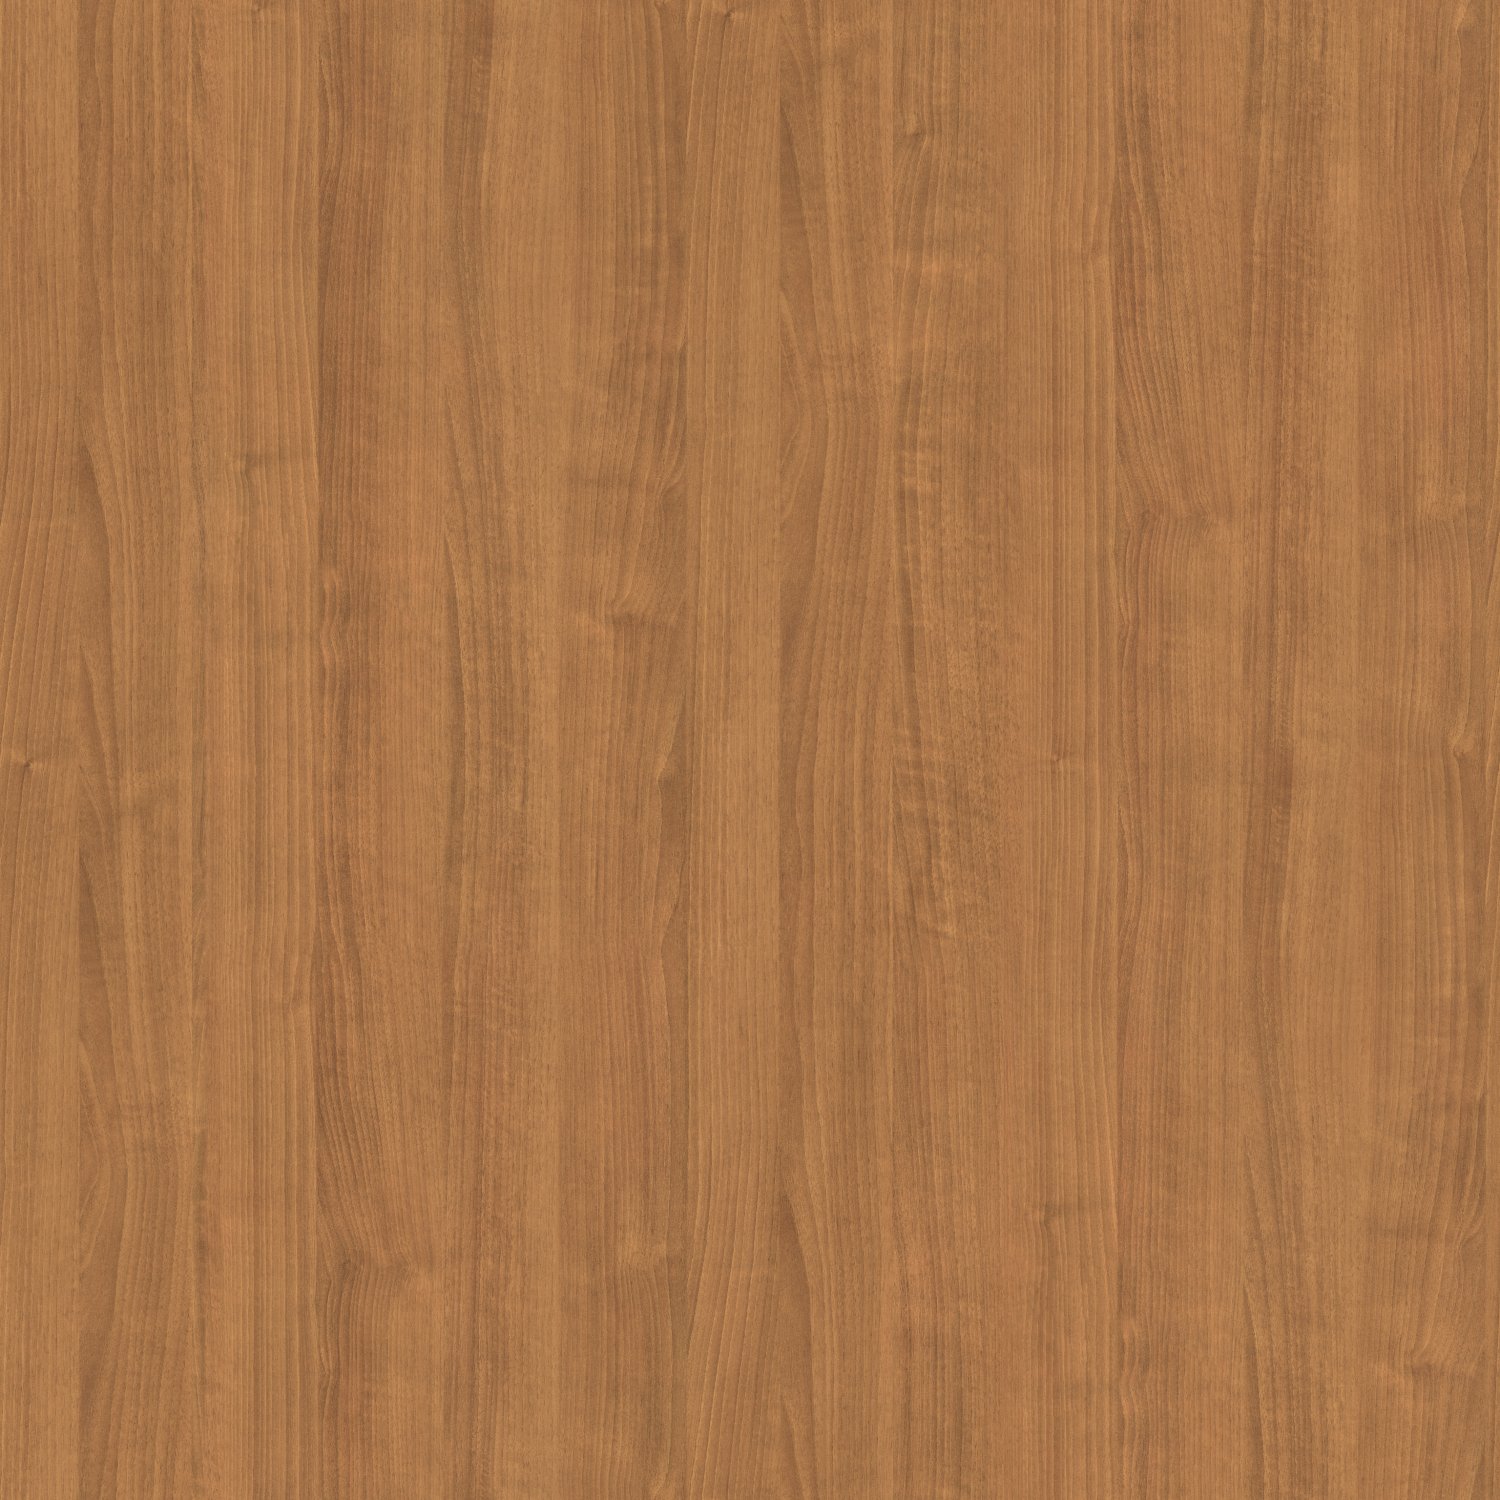 wooden texture seamless